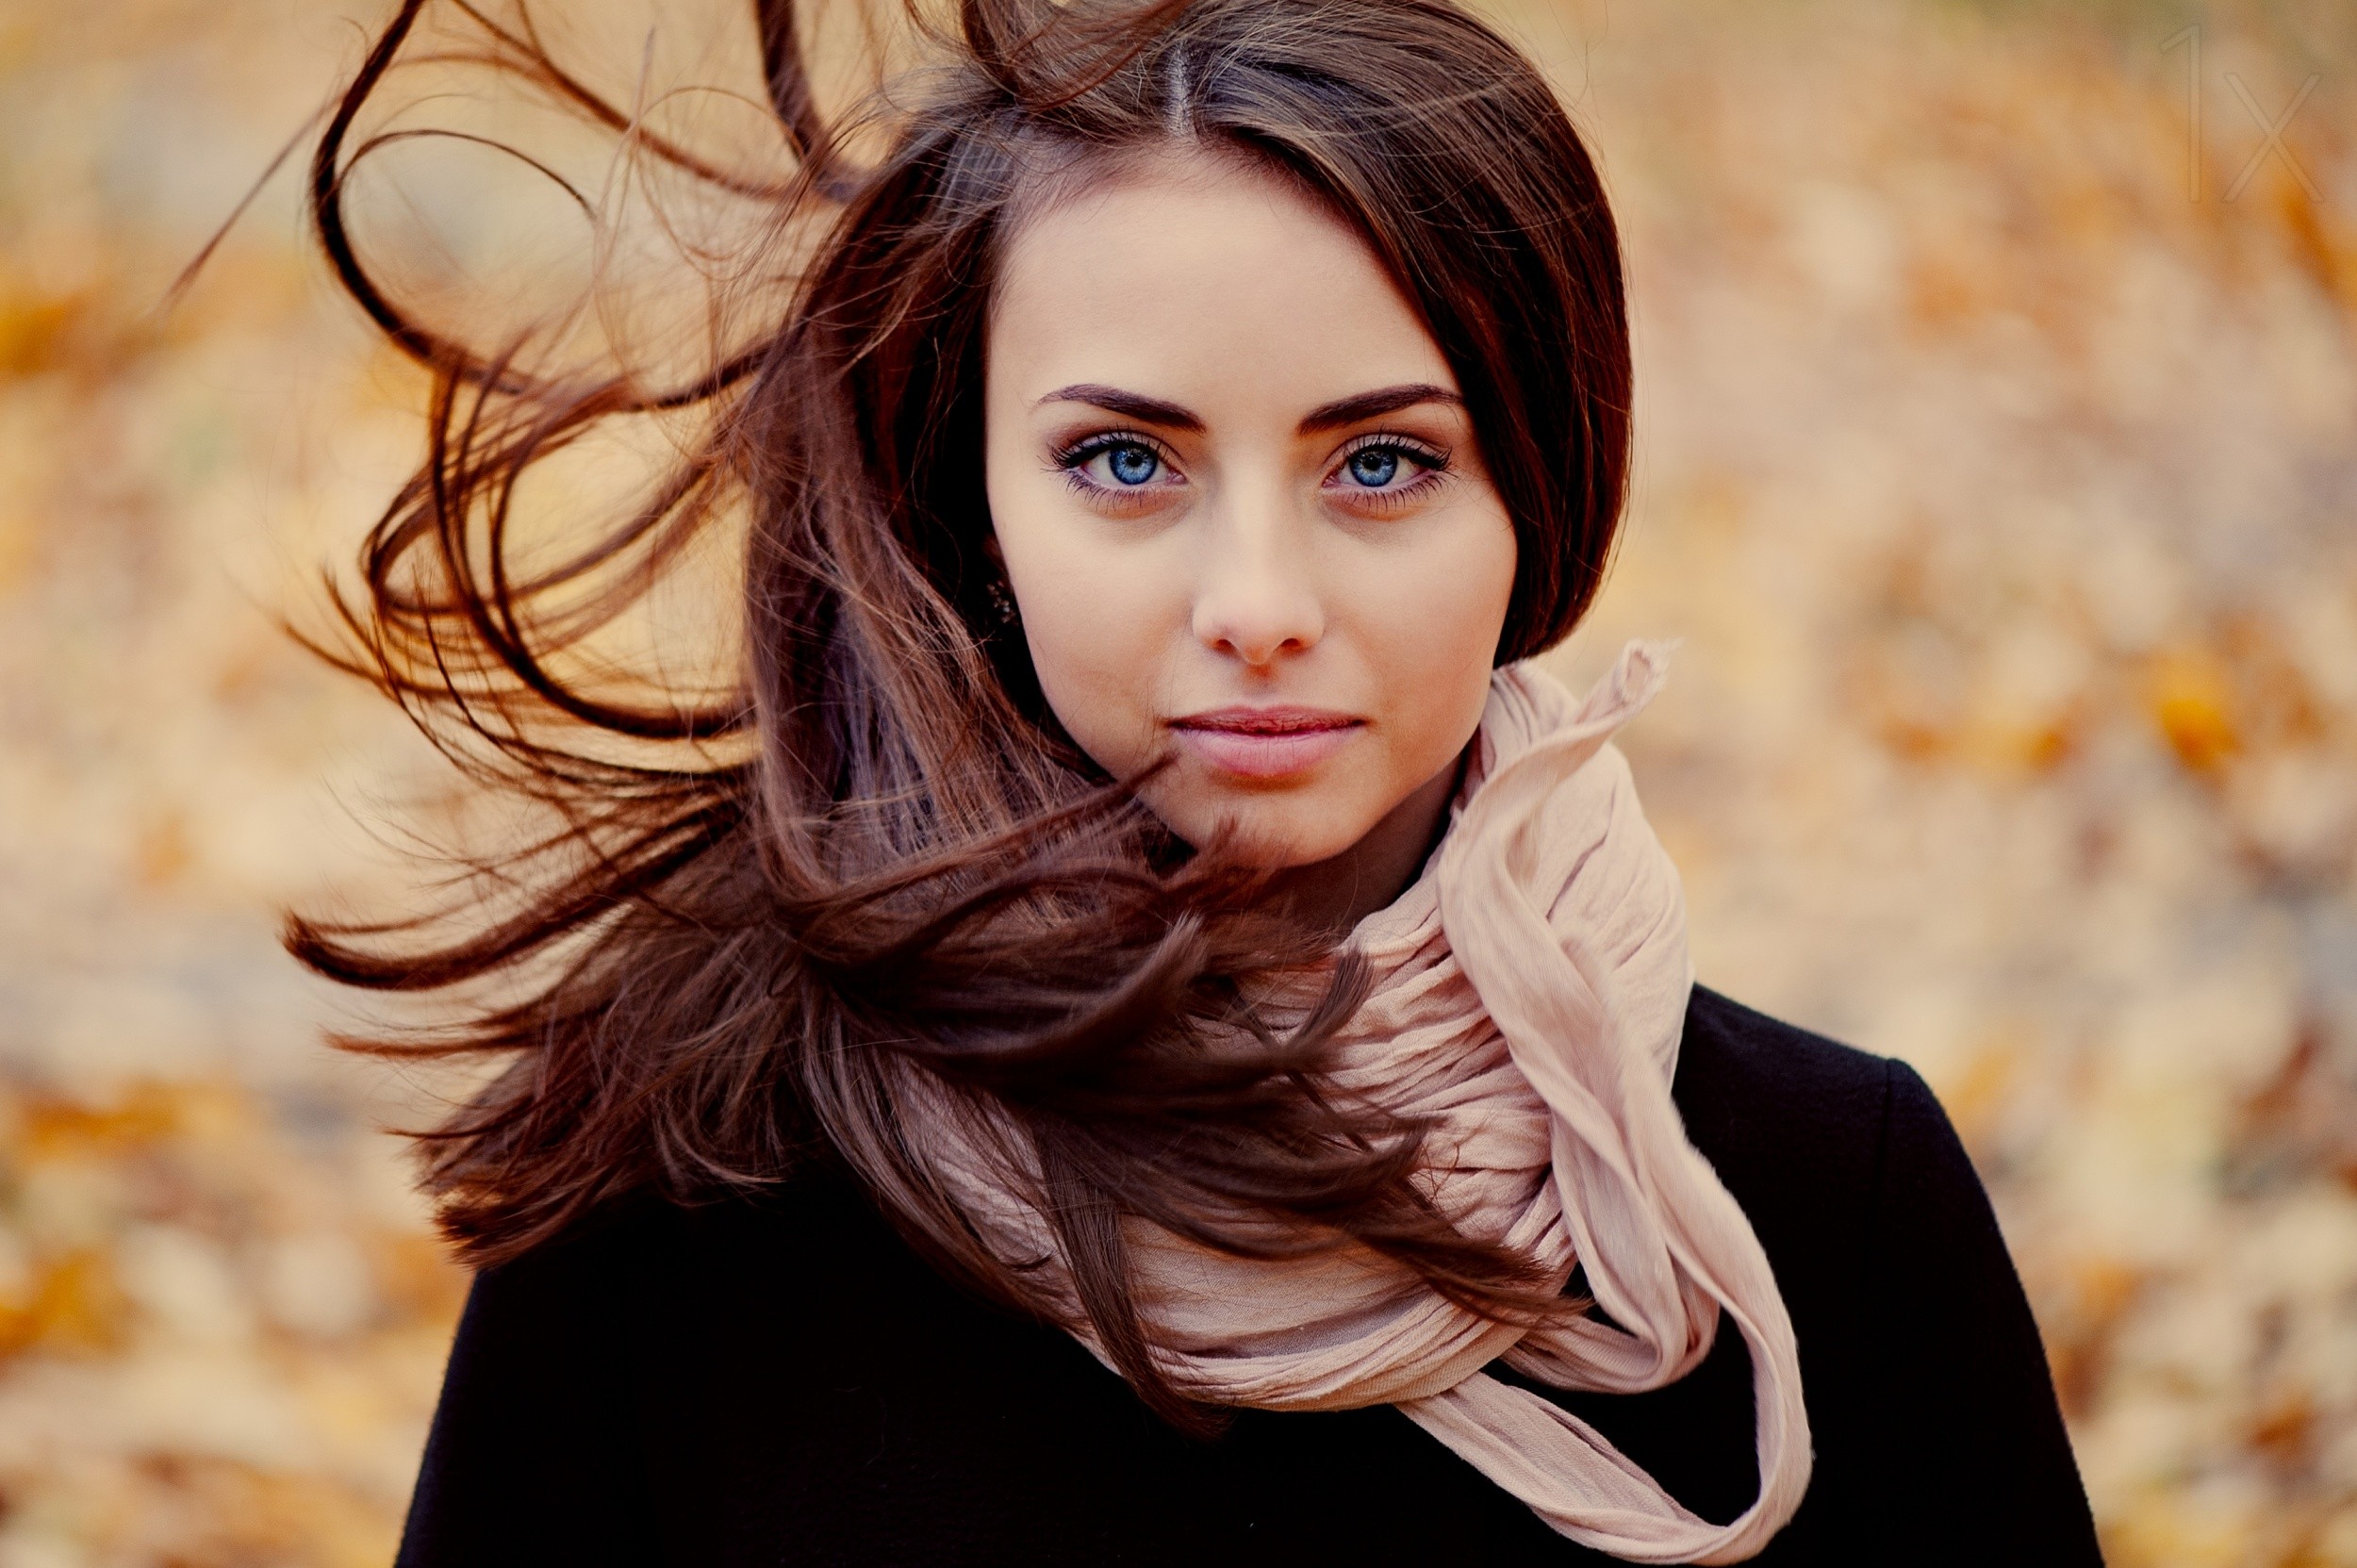 women model brunette women outdoors blue eyes ann nevreva windy nataly Wallpaper